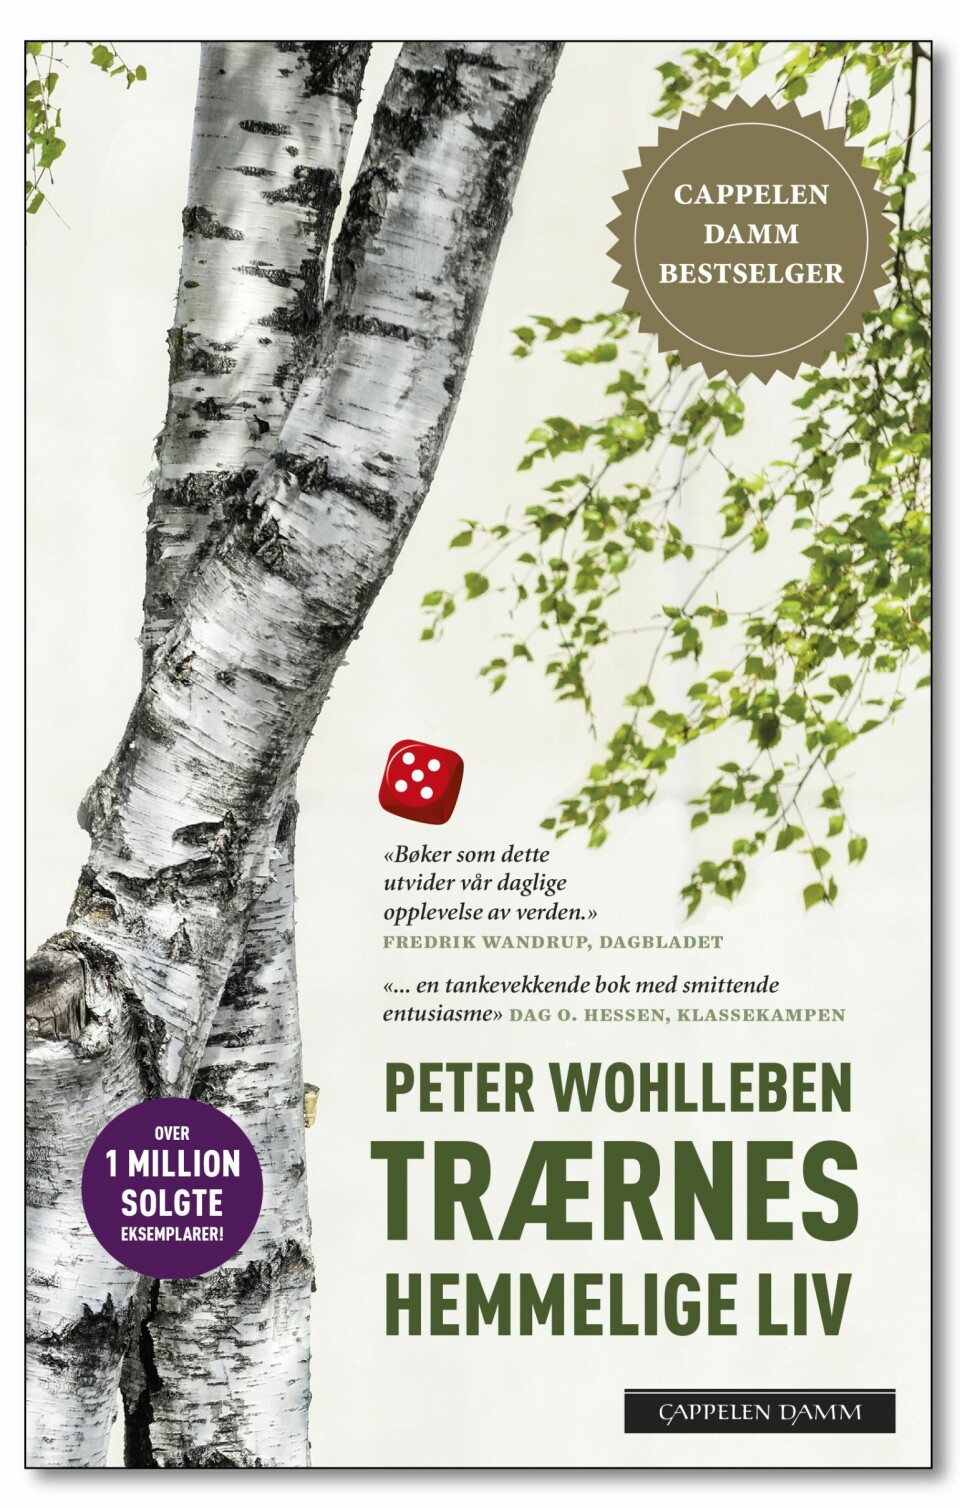 «Trærnes hemmelige liv» lå på toppen av bestselgerlistene i Norge og er solgt i 36.000 eksemplarer her i landet. Den fikk begeistret mottakelse av anmeldere. Men er boka basert på god forskning, slik forfatteren og forlaget påstår?